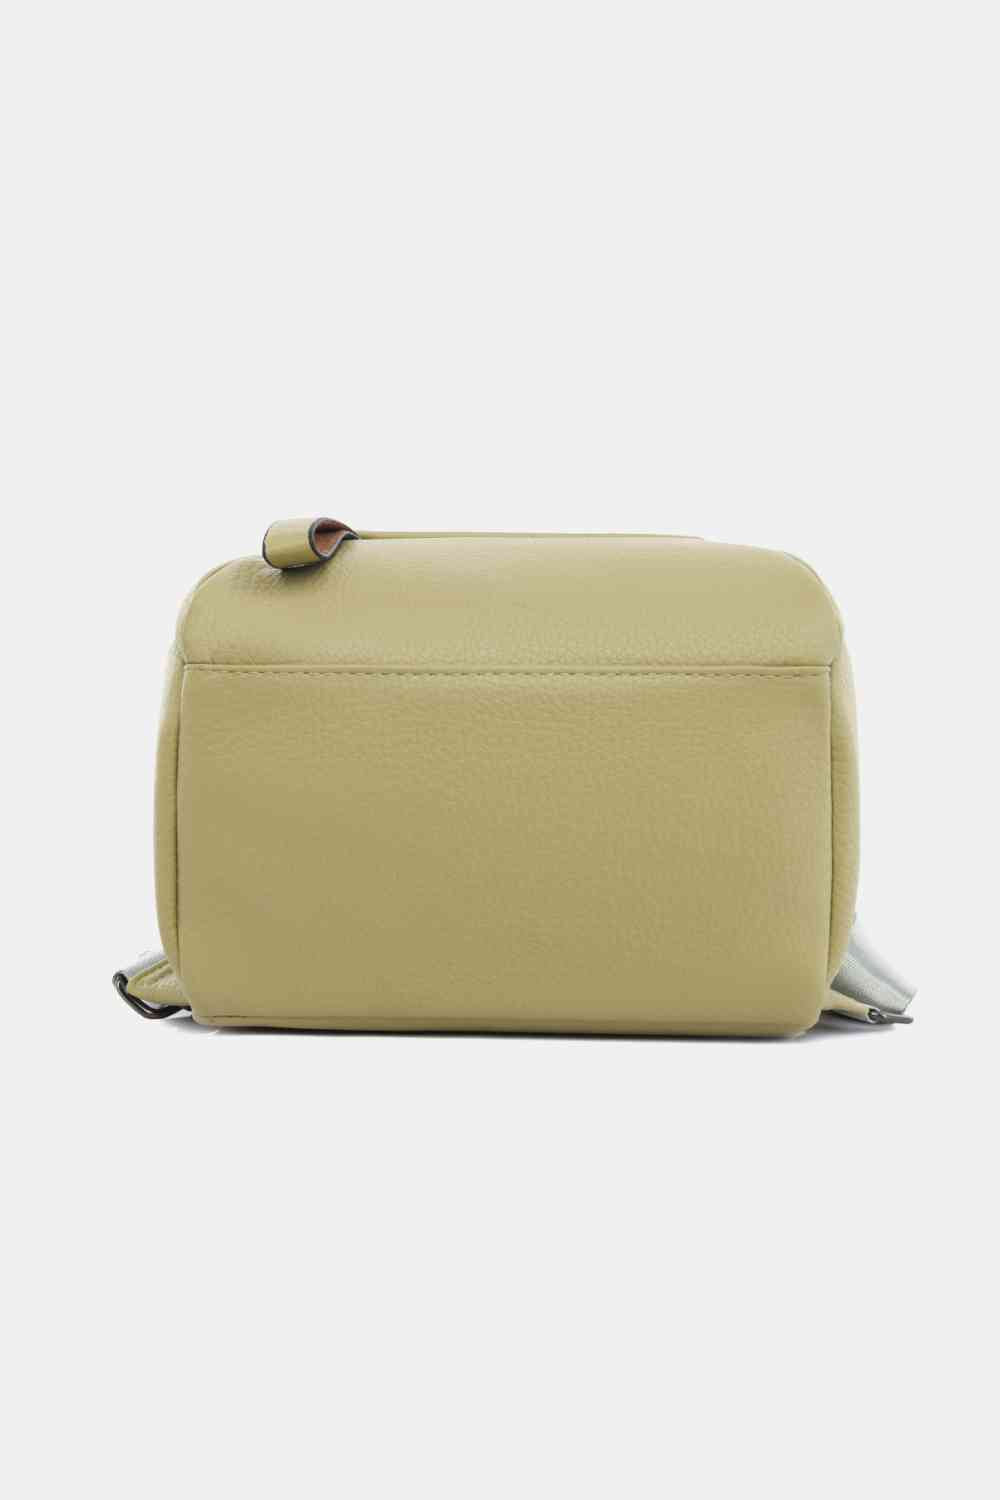 TEEK - Best Basic Backpack BAG TEEK Trend   